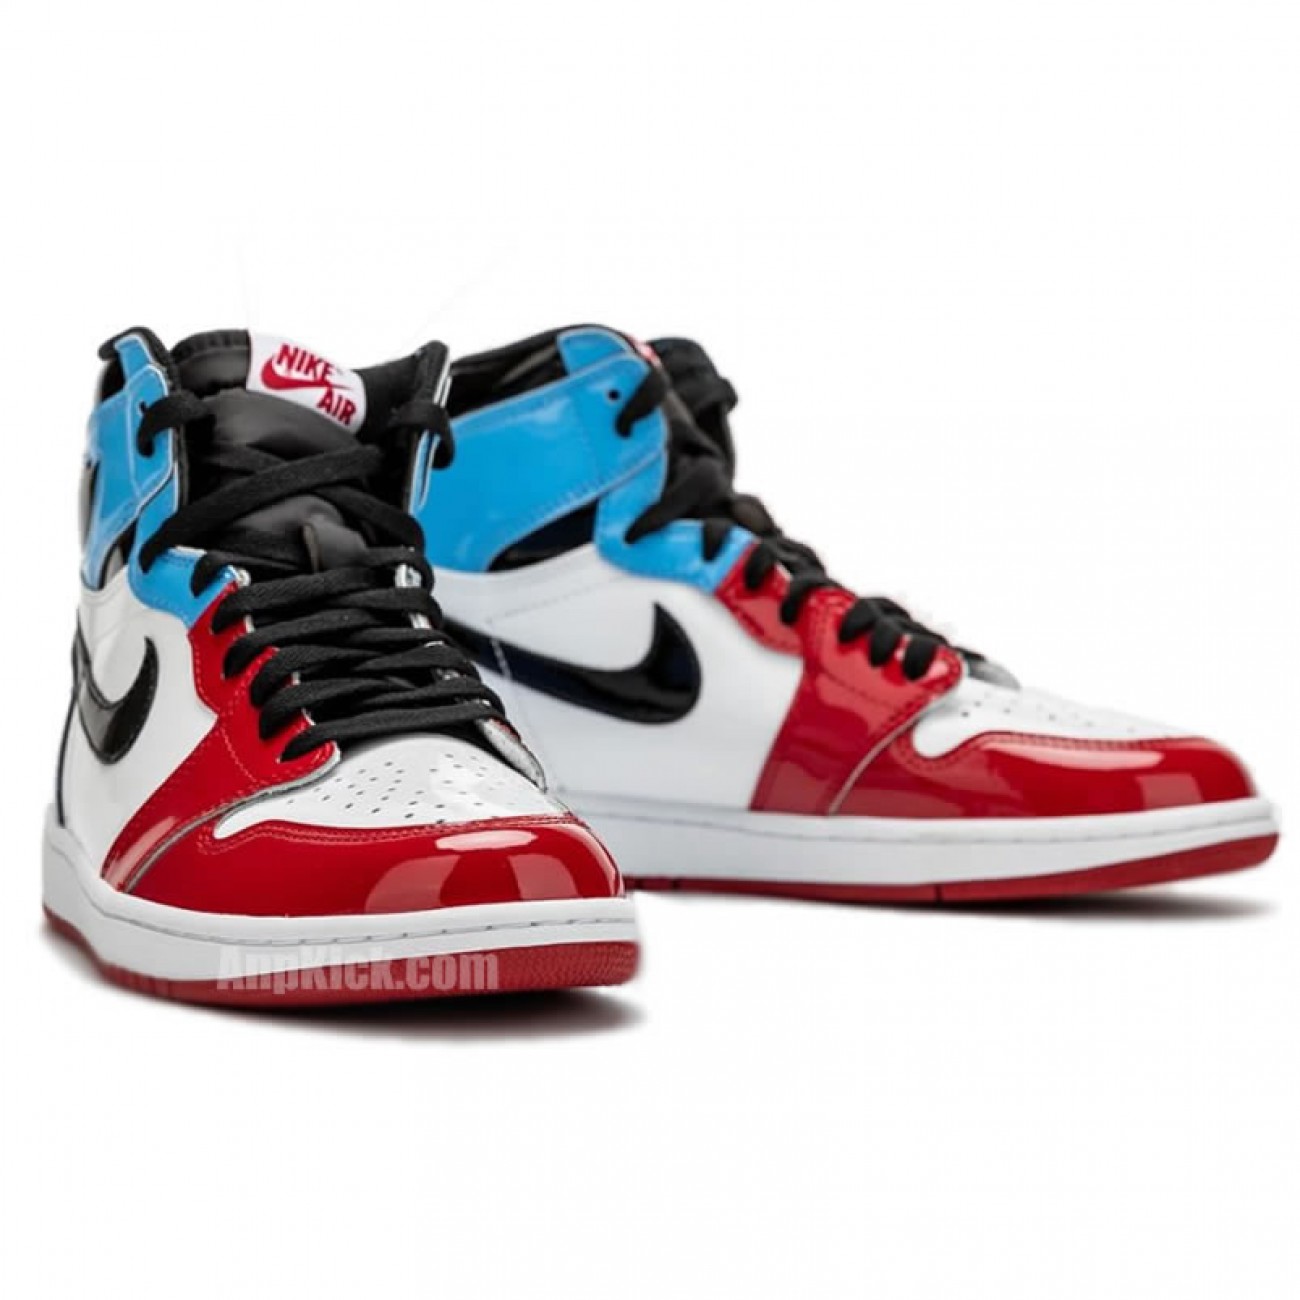 Air Jordan 1 High OG "Fearless" Men's Women's Shoes On Feet Release Date CK5666-100